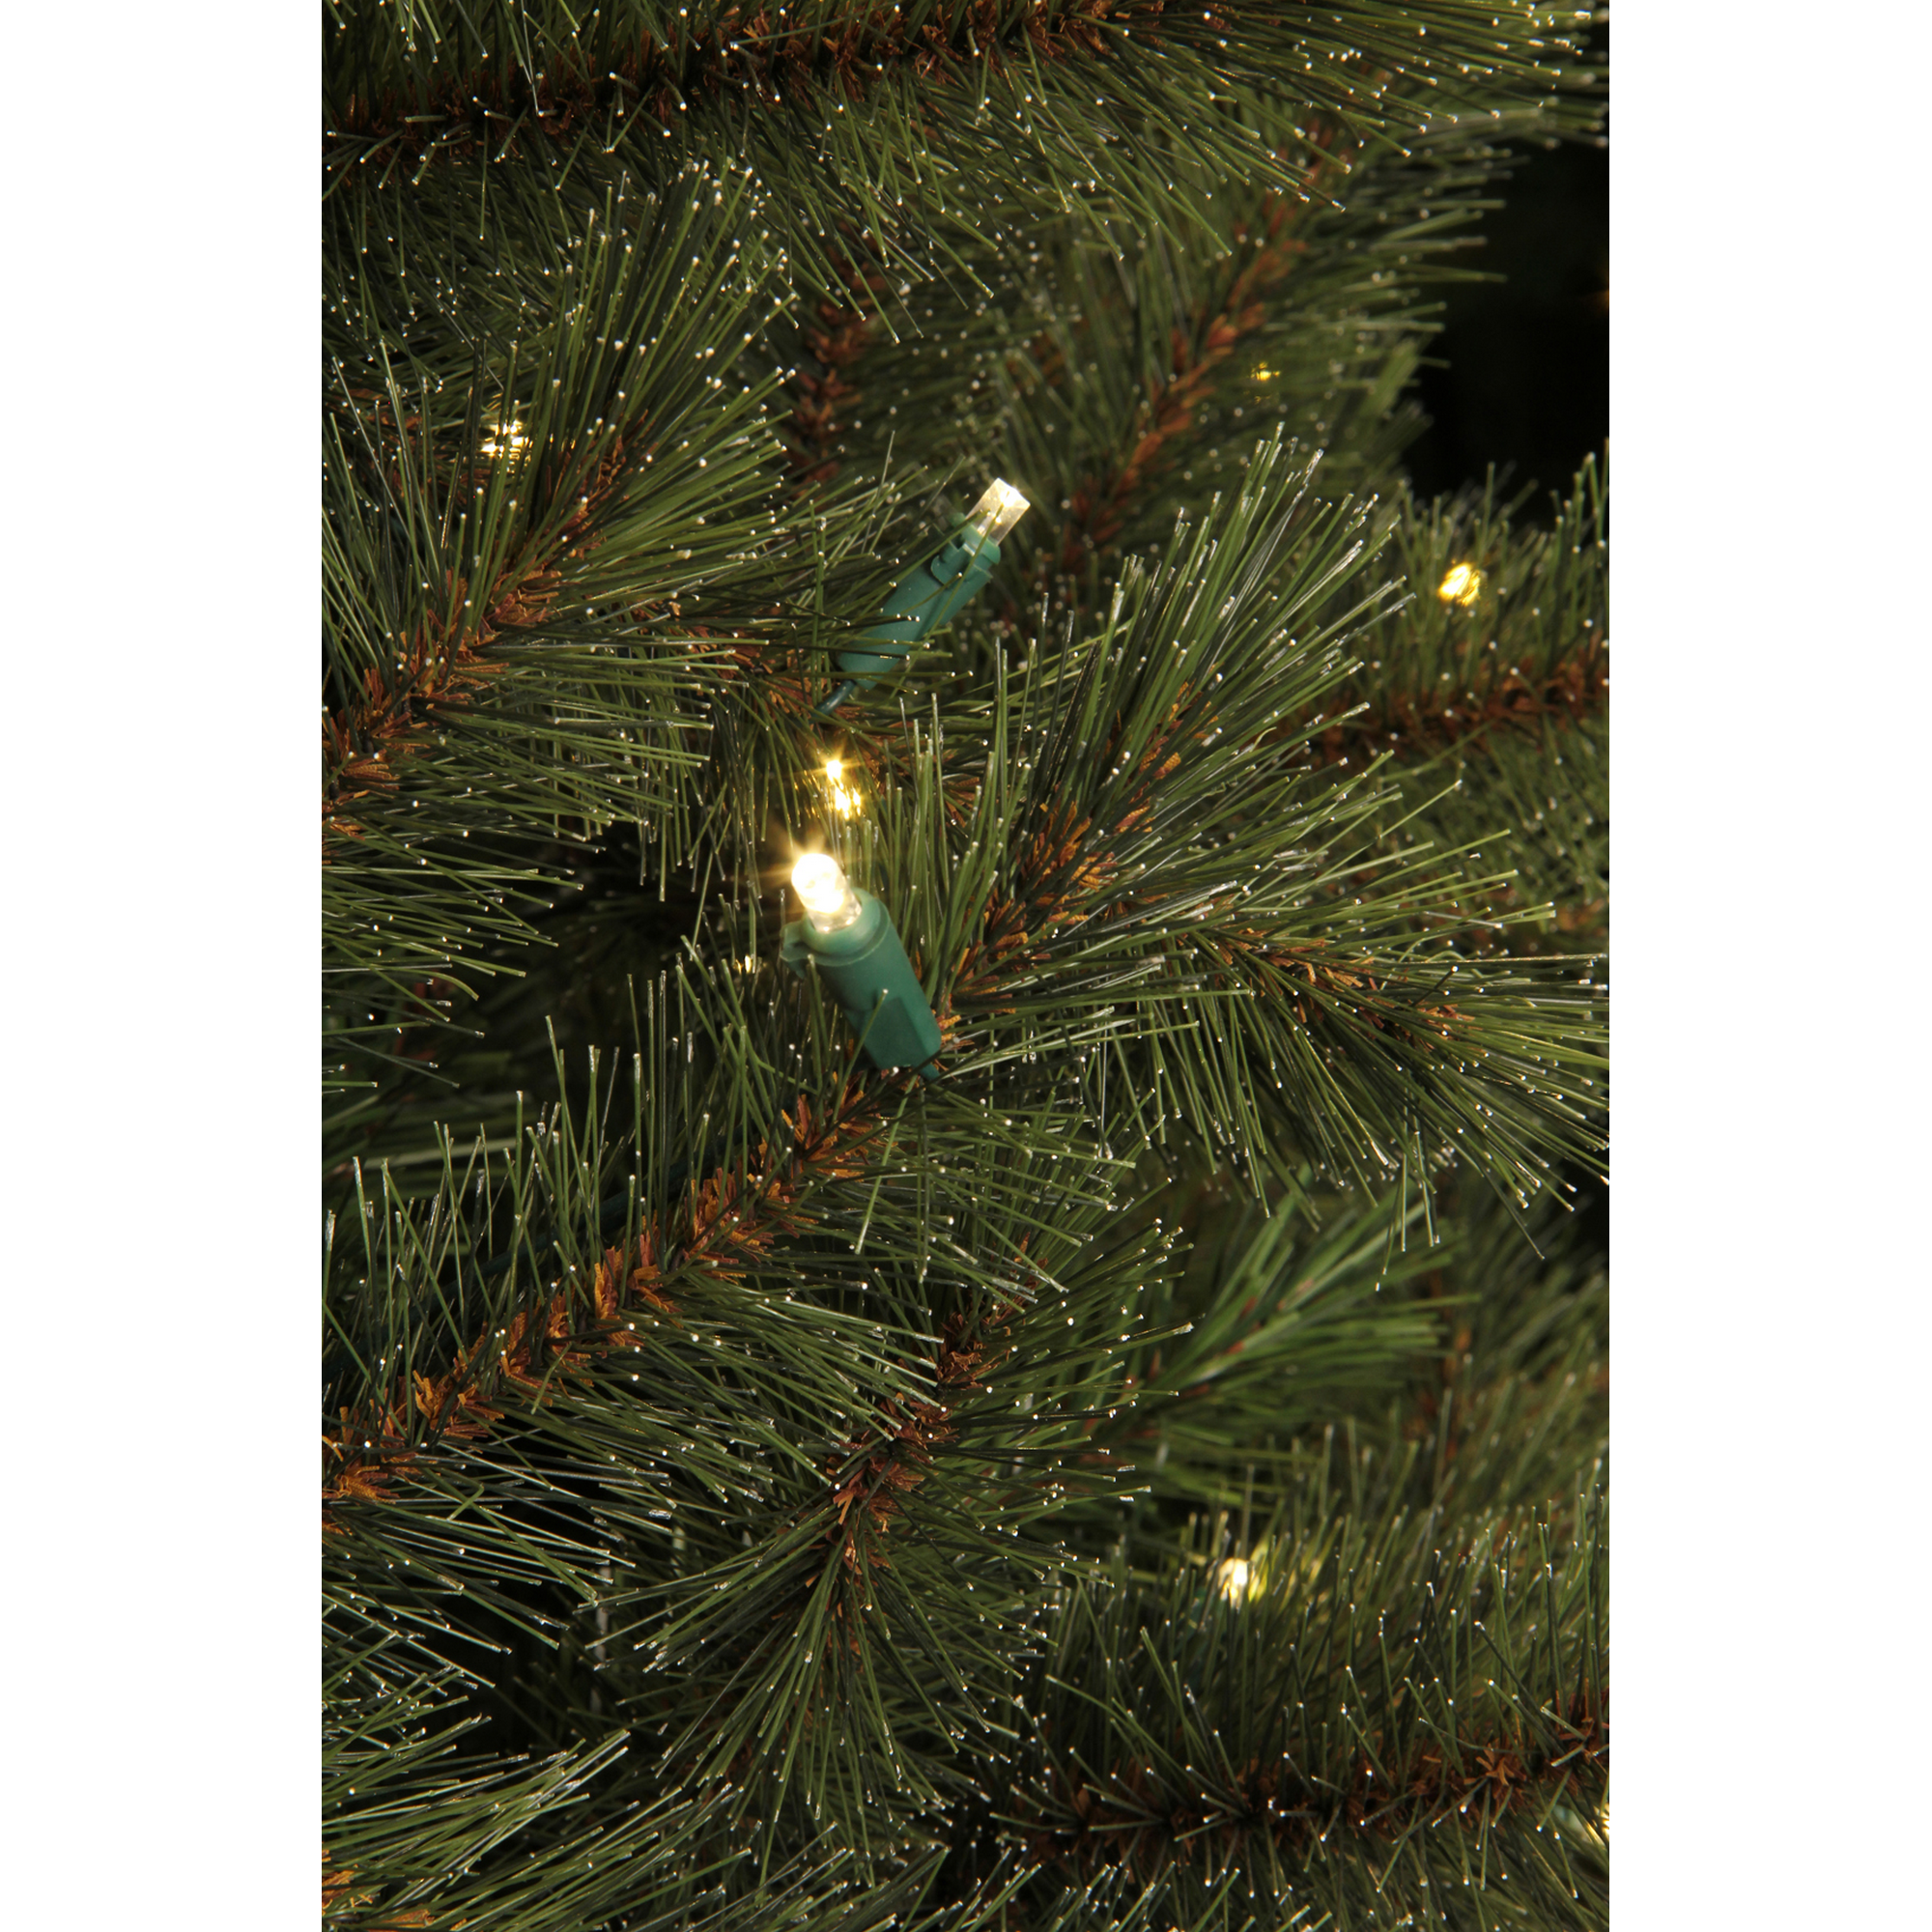 Künstlicher Weihnachtsbaum 'Vail' grün 185 cm, mit LED-Beleuchtung + product picture